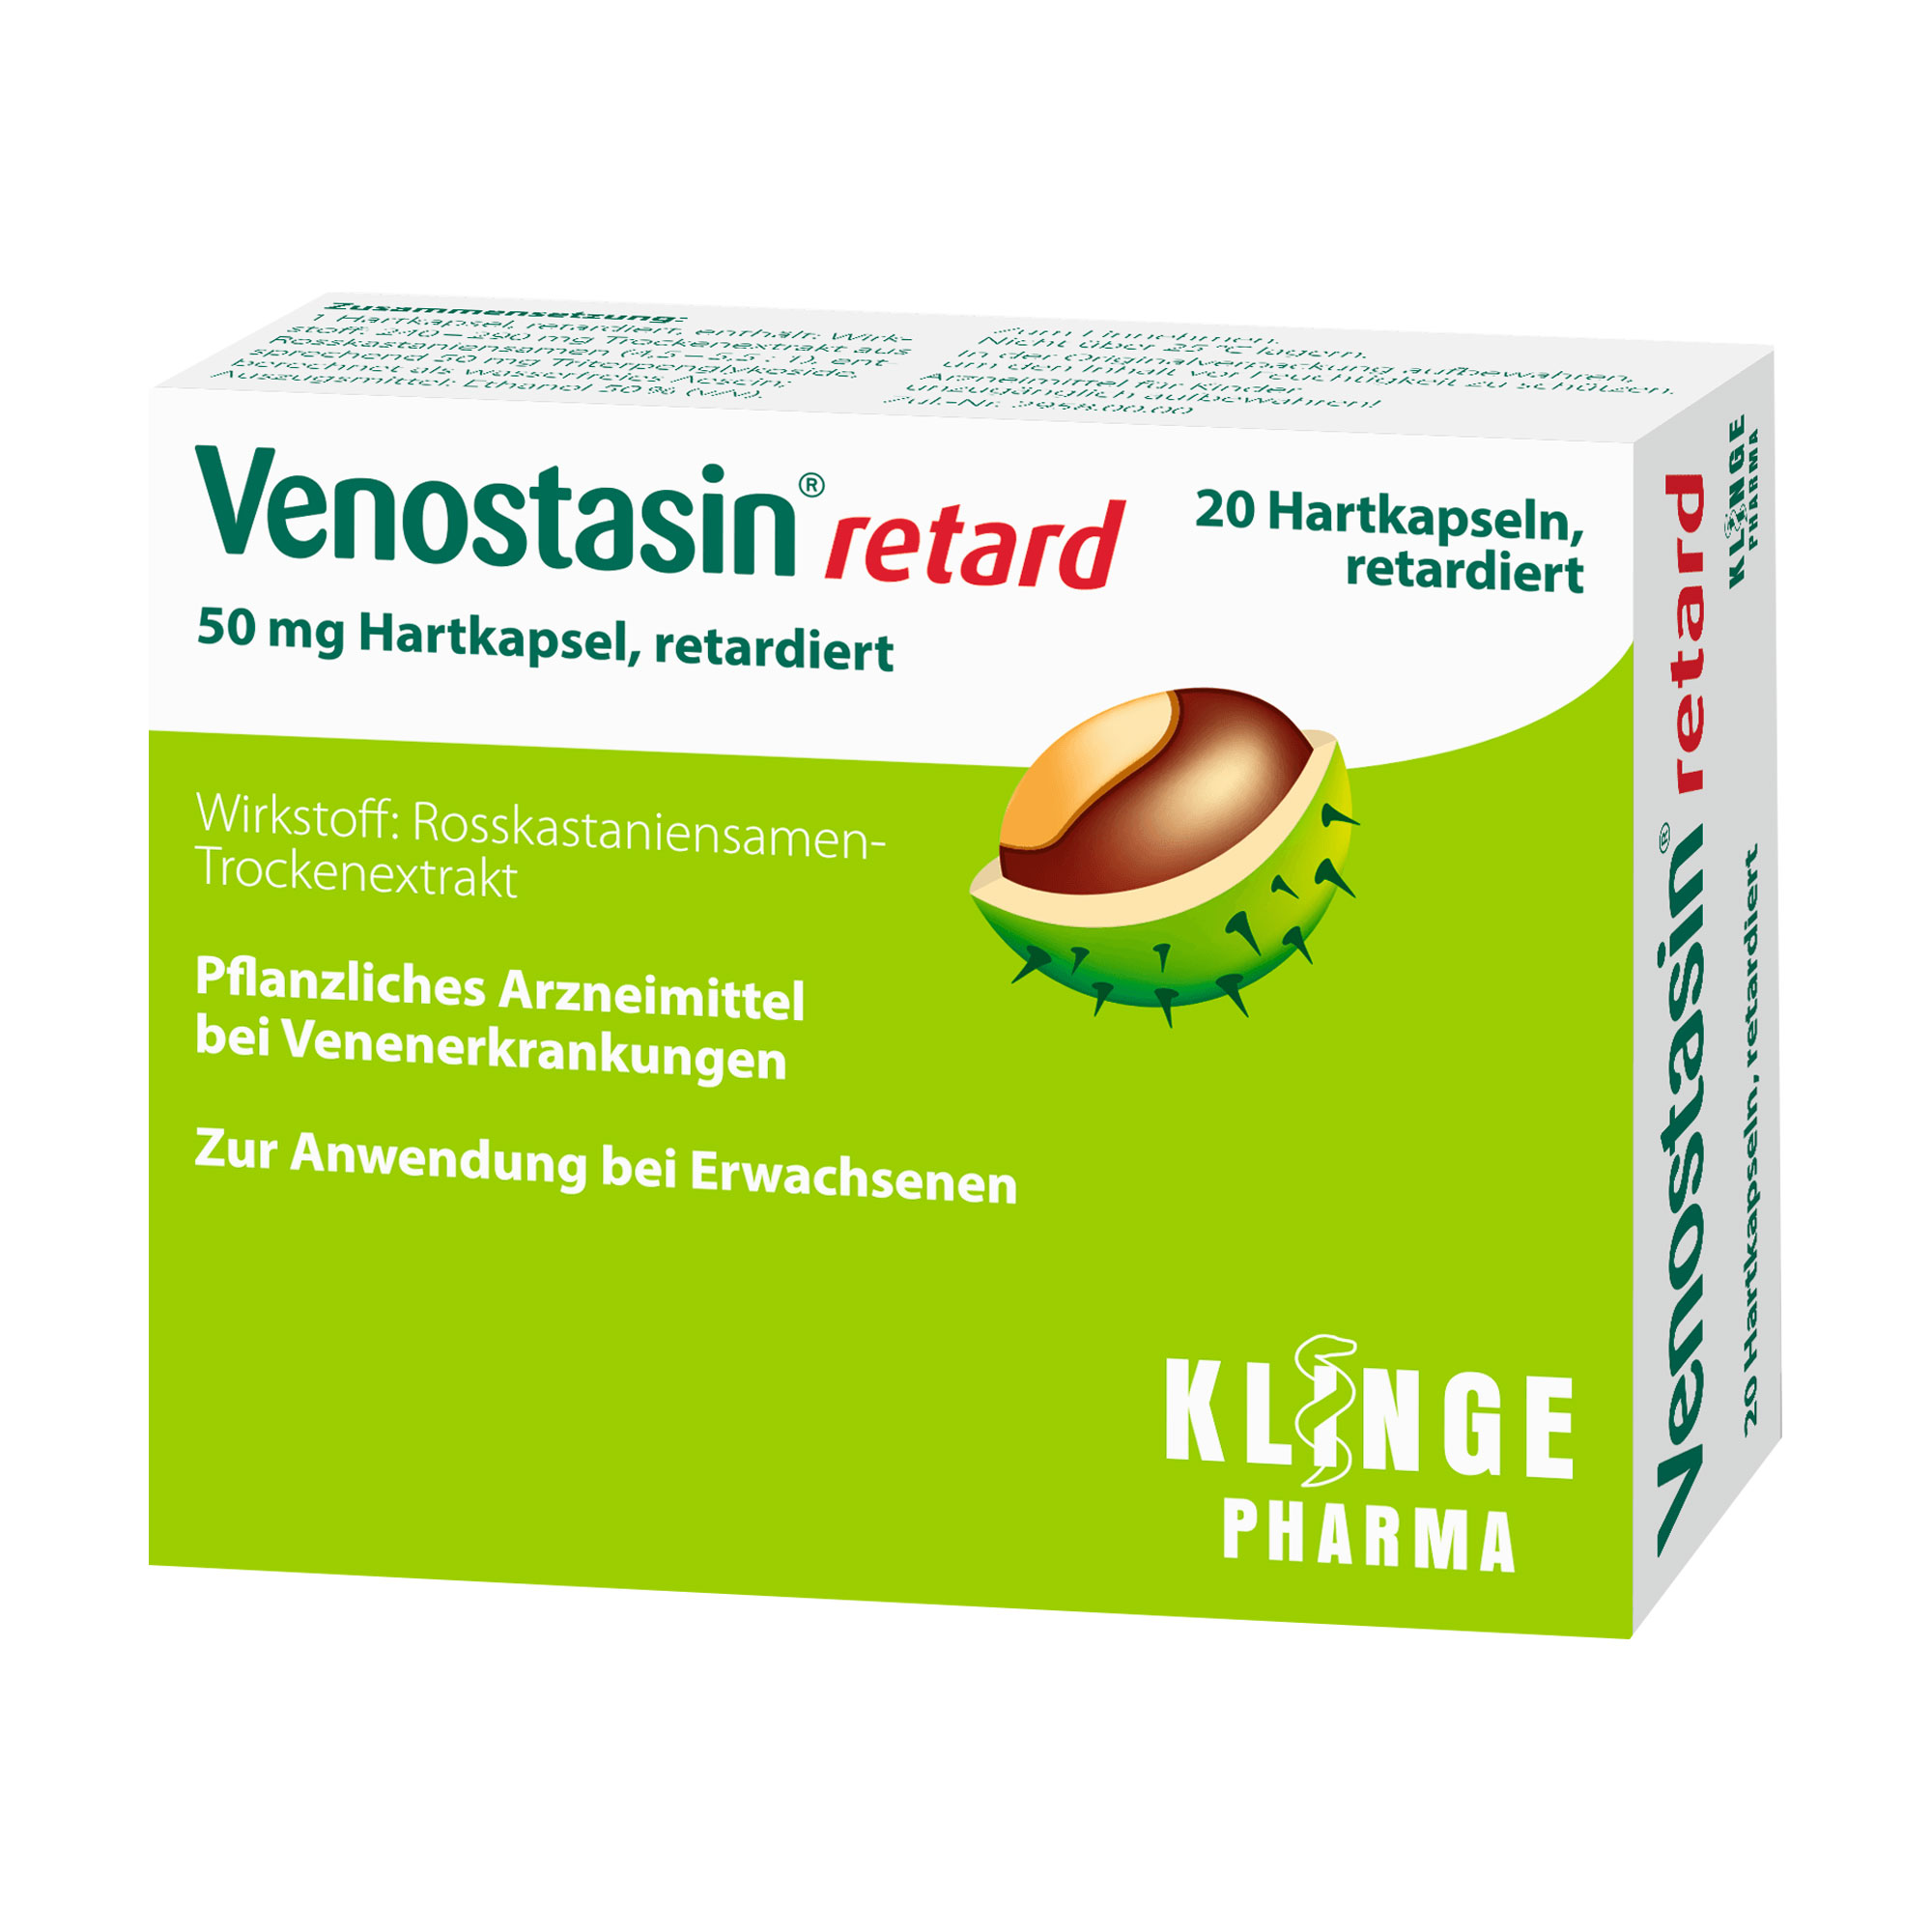 Pflanzliches Arzneimittel bei Venenerkrankungen.